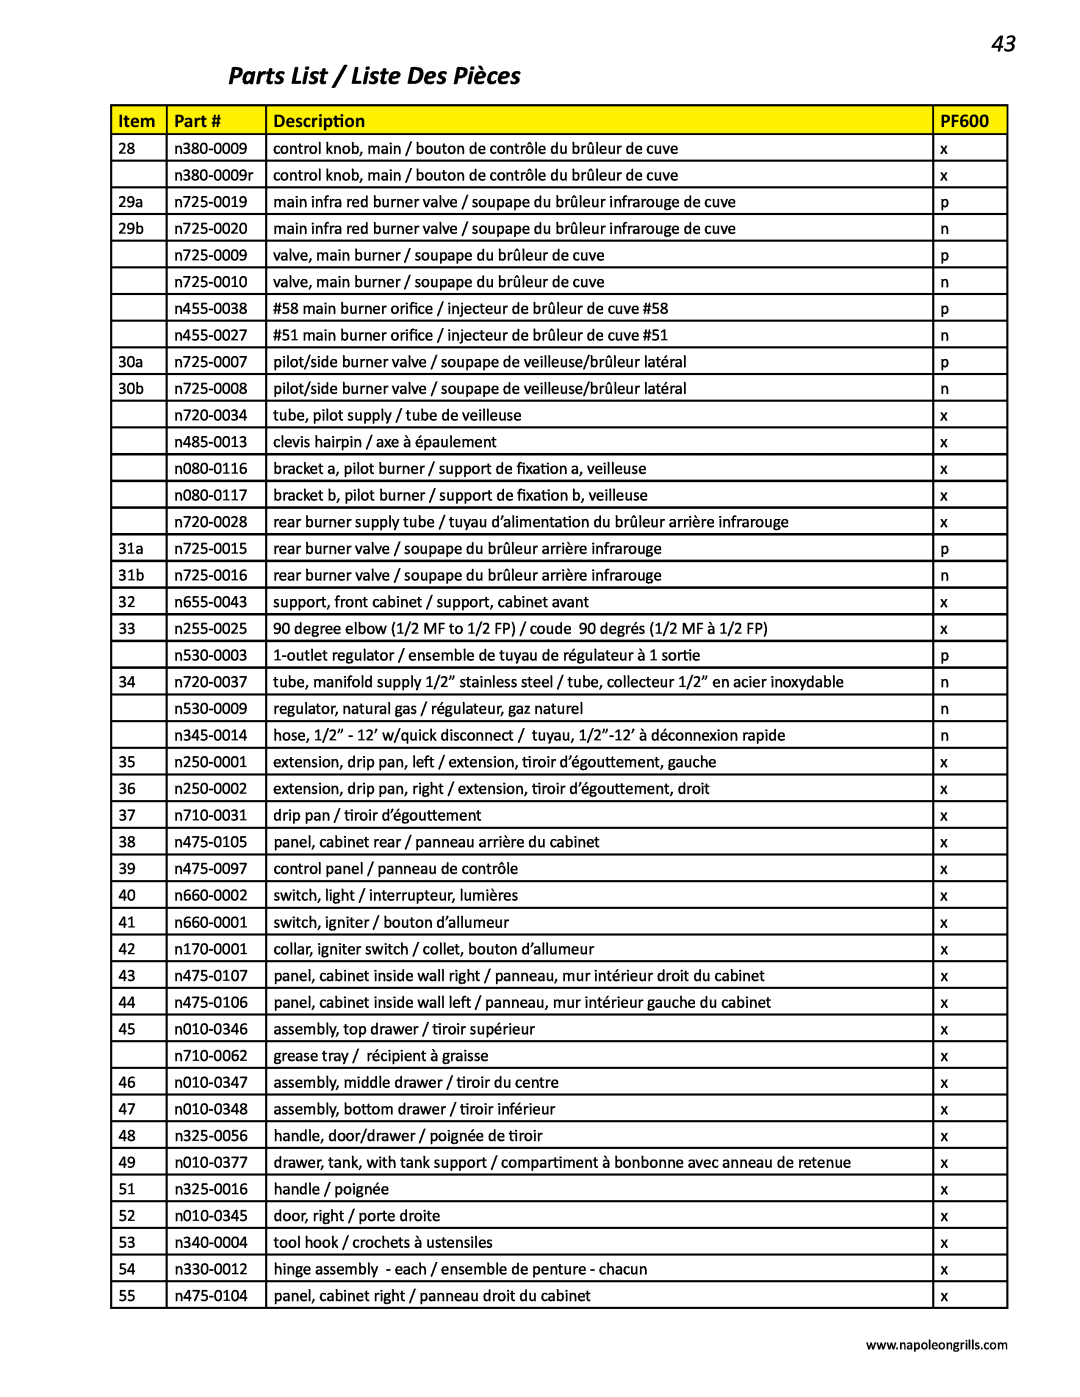 Napoleon Grills V 450, V 600 manual Parts List / Liste Des Pièces, n380-0009 